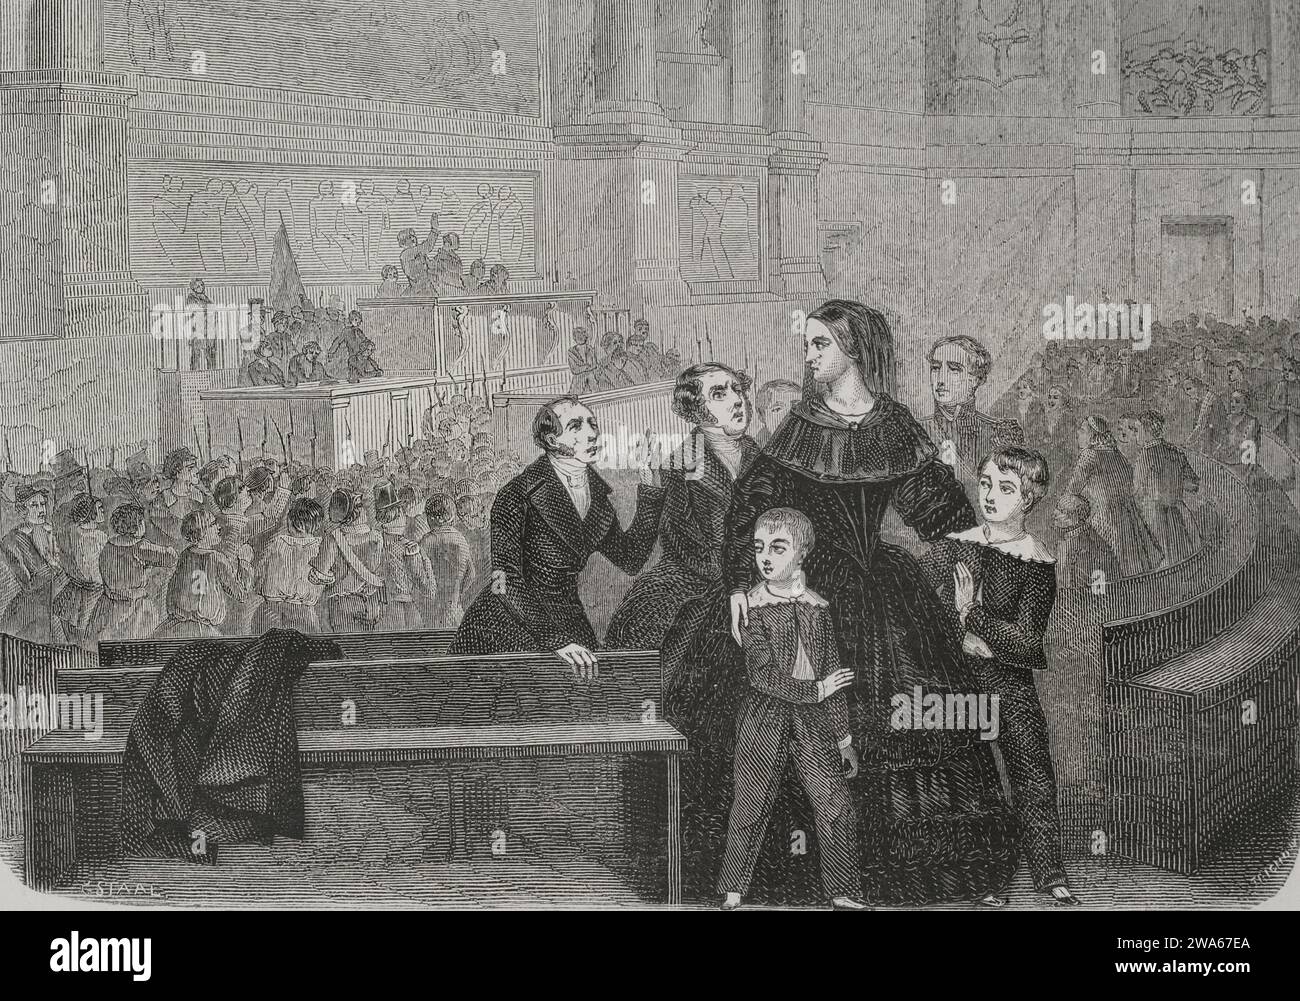 Rivoluzione francese del 1848. I parigini presero le armi il 23 e 24 febbraio 1848, portando all'abdicazione di re Luigi Filippo i (1773-1850) in fa Foto Stock